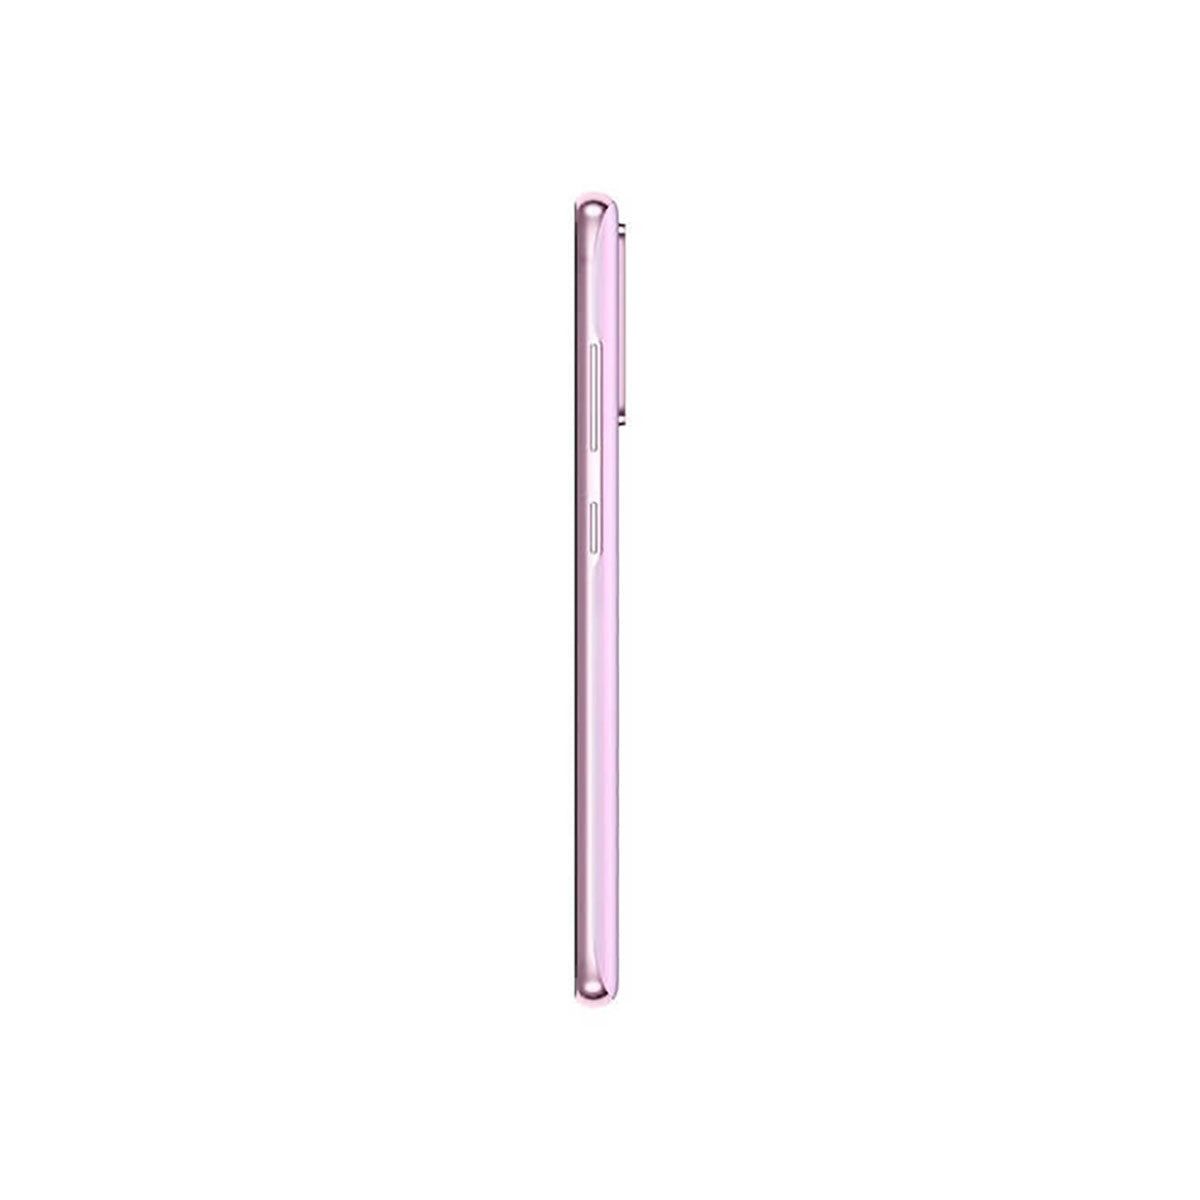 Samsung Galaxy S20 FE 5G 6GB/128GB Violeta (Lavander) Dual SIM G781B Smartphone | Samsung